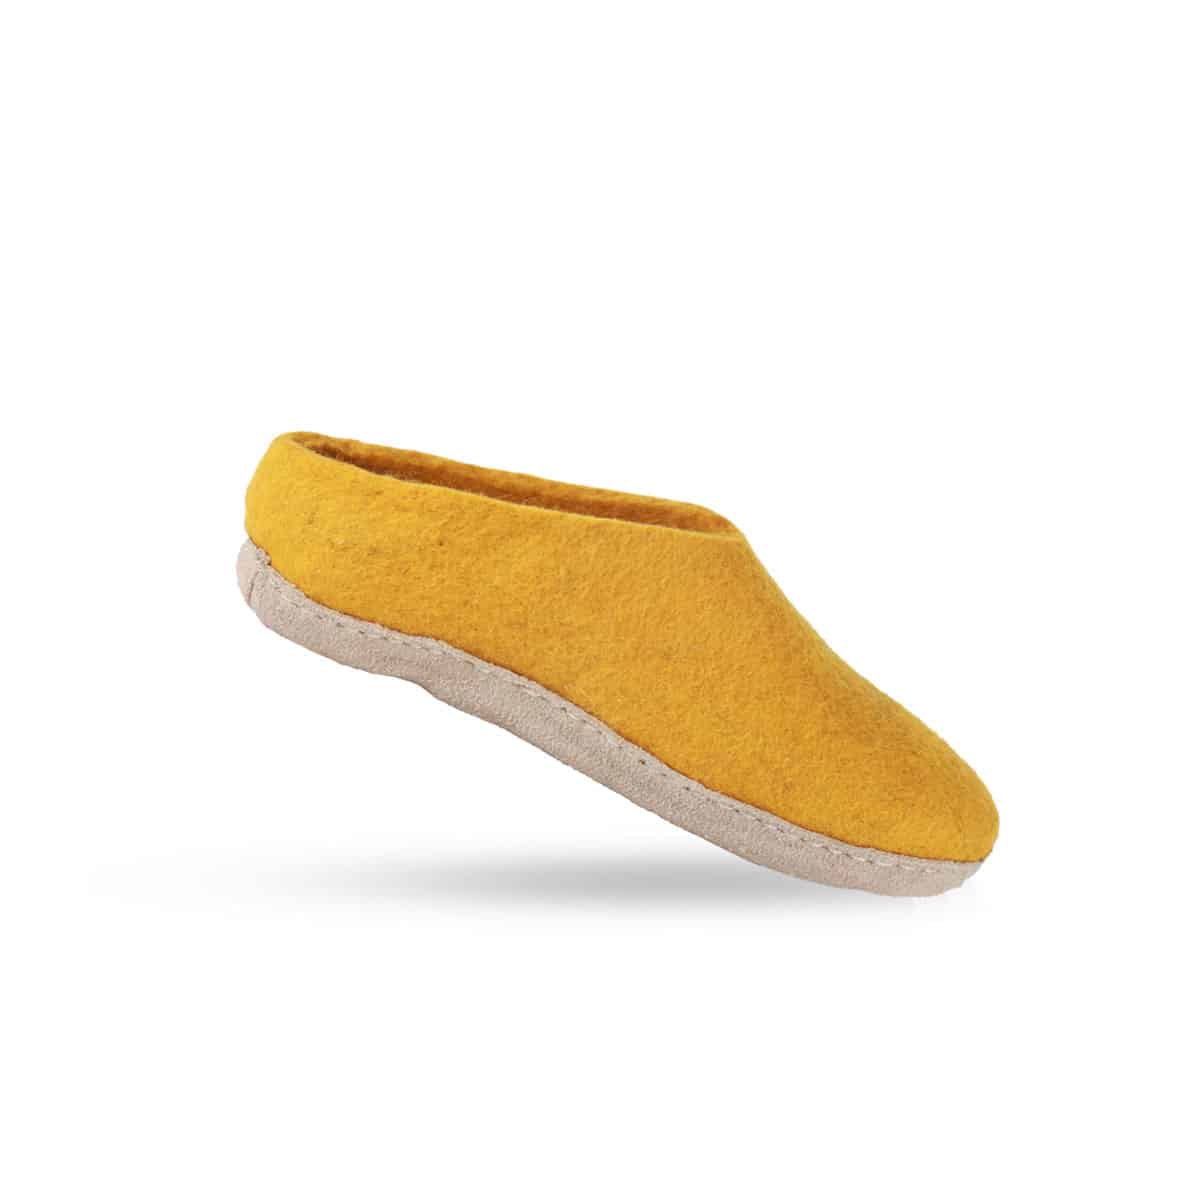 Billede af Uldtøffel (100% ren uld) - Model Karry gul m/sål i skind - Dansk Design fra SHUS